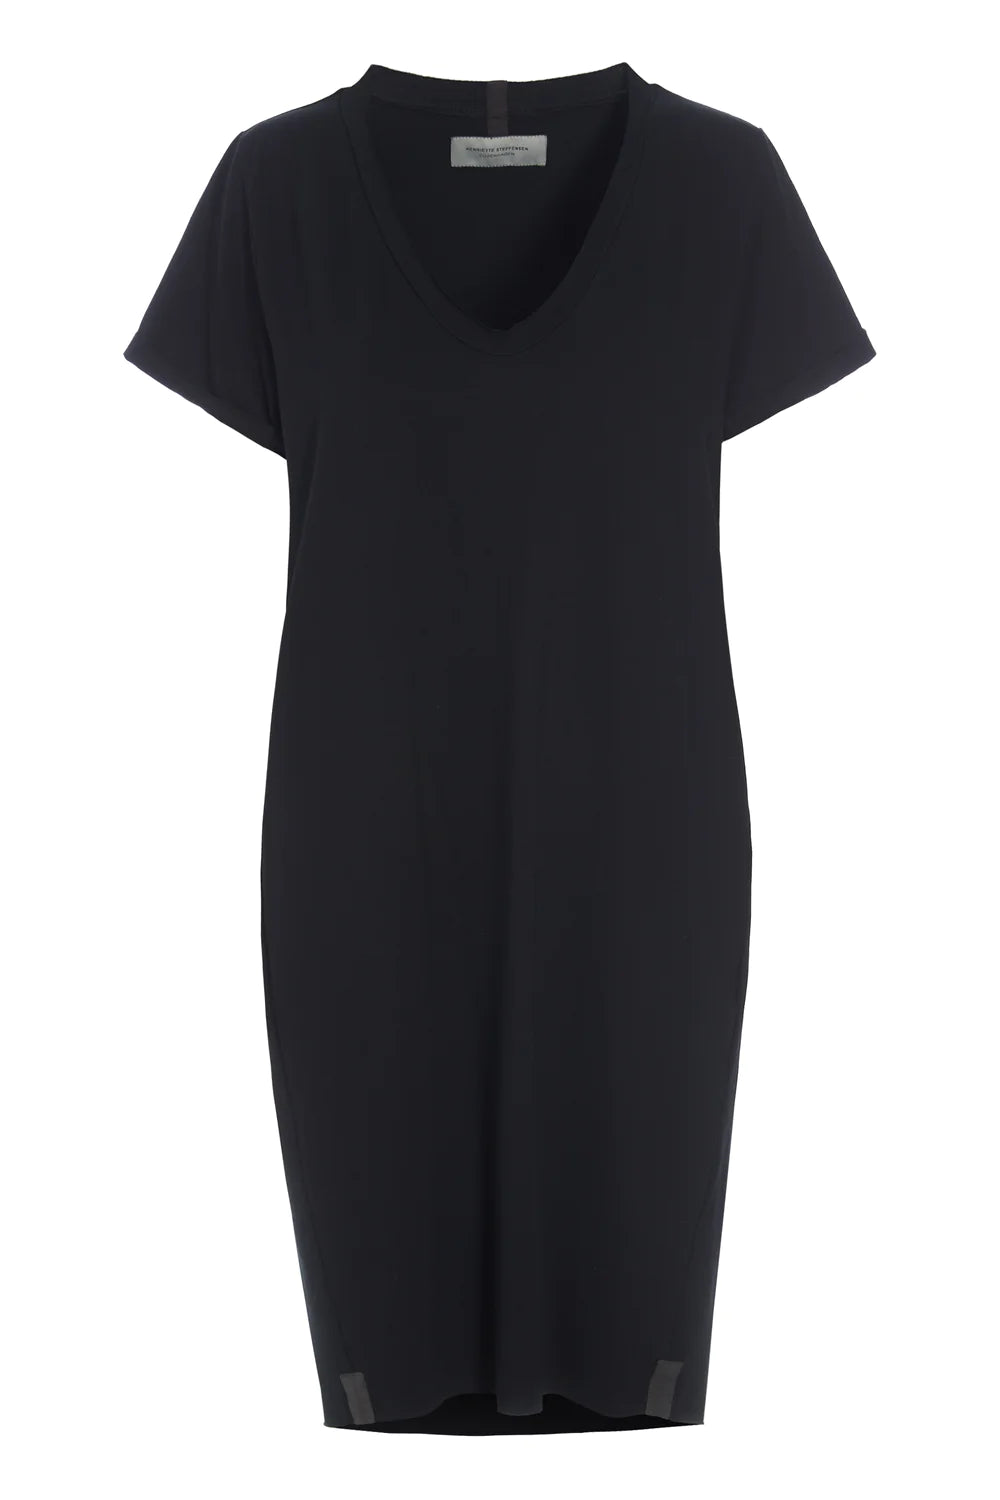 Henriette Steffensen Black V-Neck Dress-Womens-Ohh! By Gum - Shop Sustainable